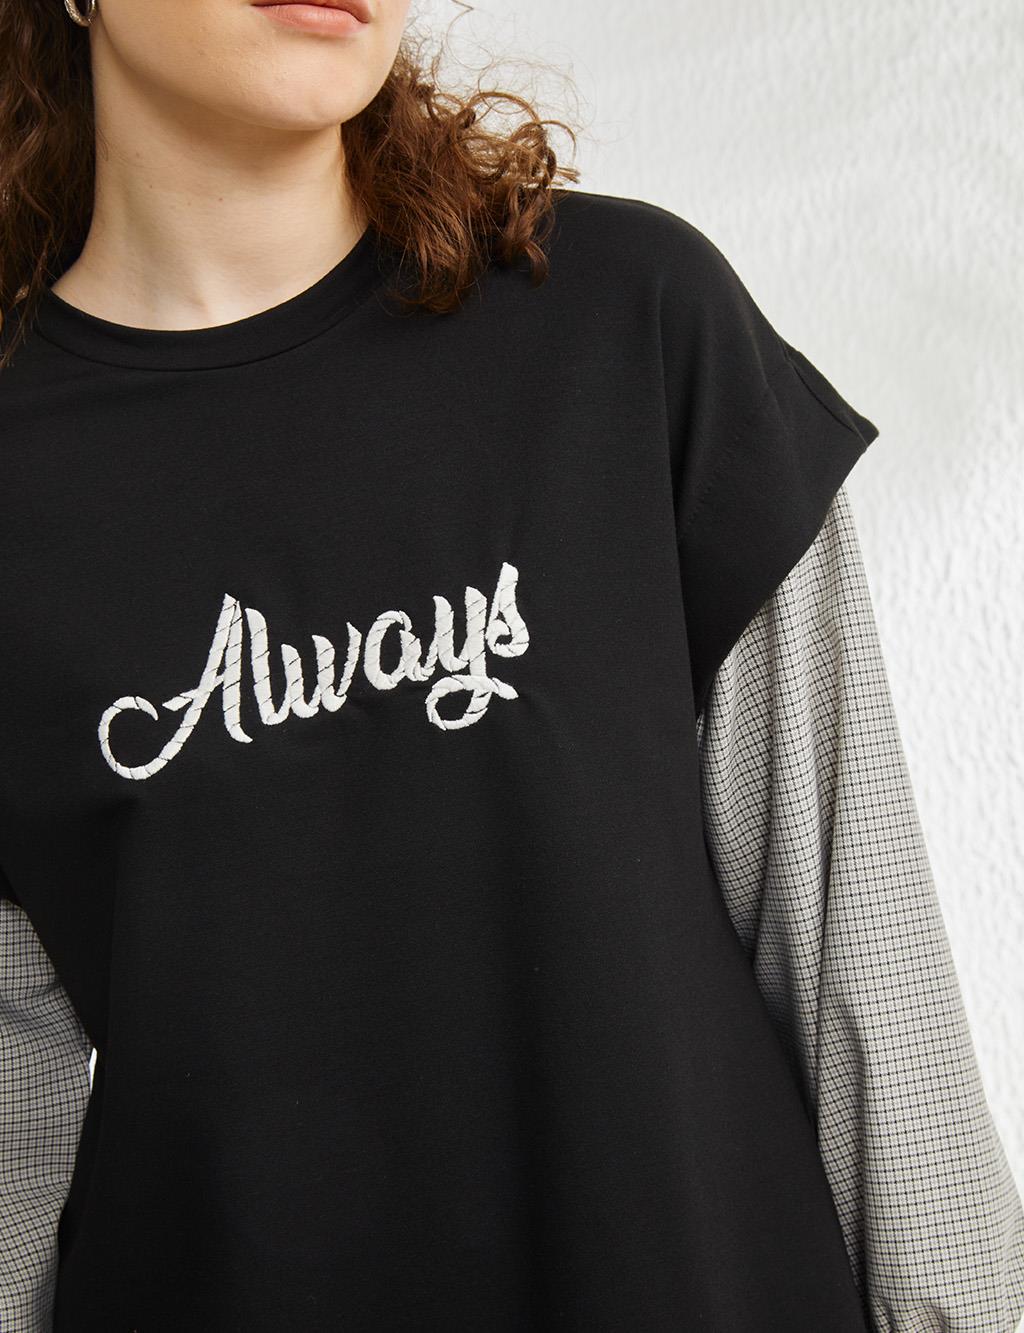 Gingham Sleeves, Slogan Printed Sweatshirt Black